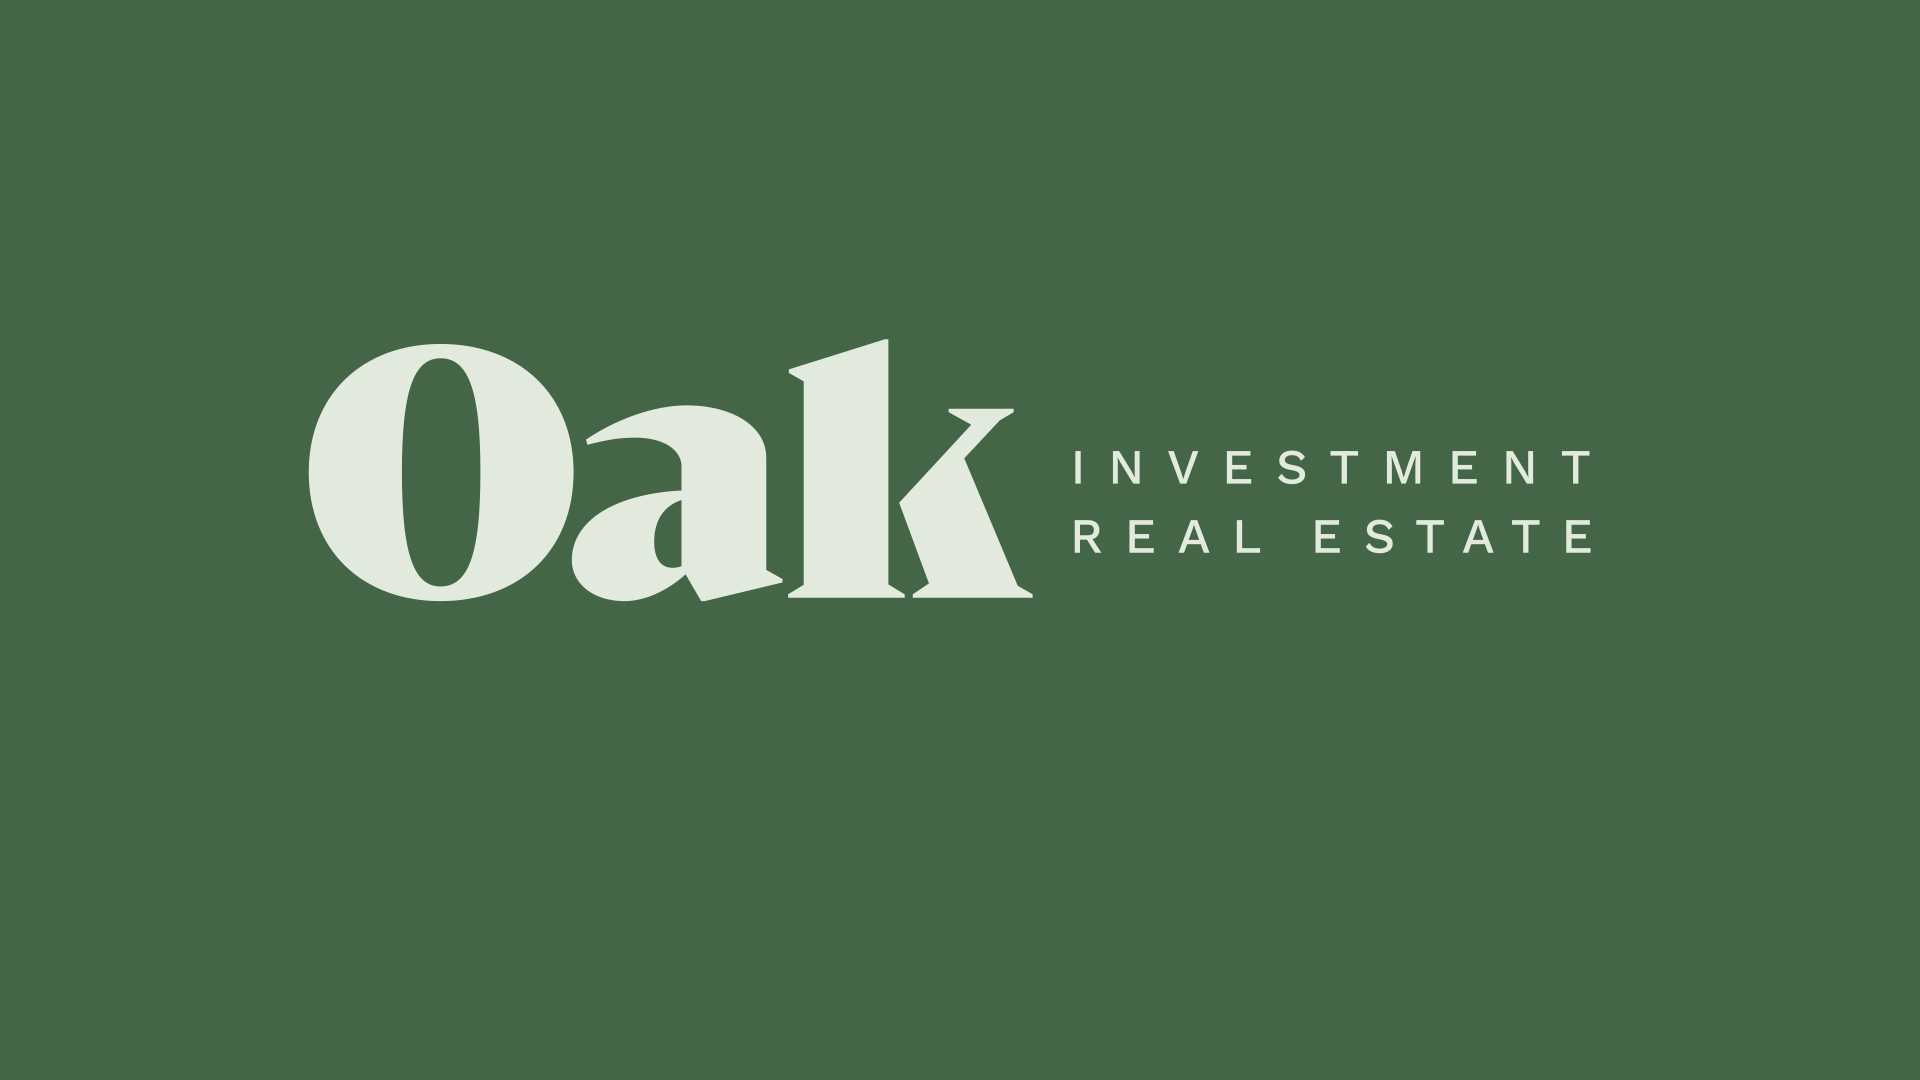 Oak Investment Real Estate Branding - Logo Design